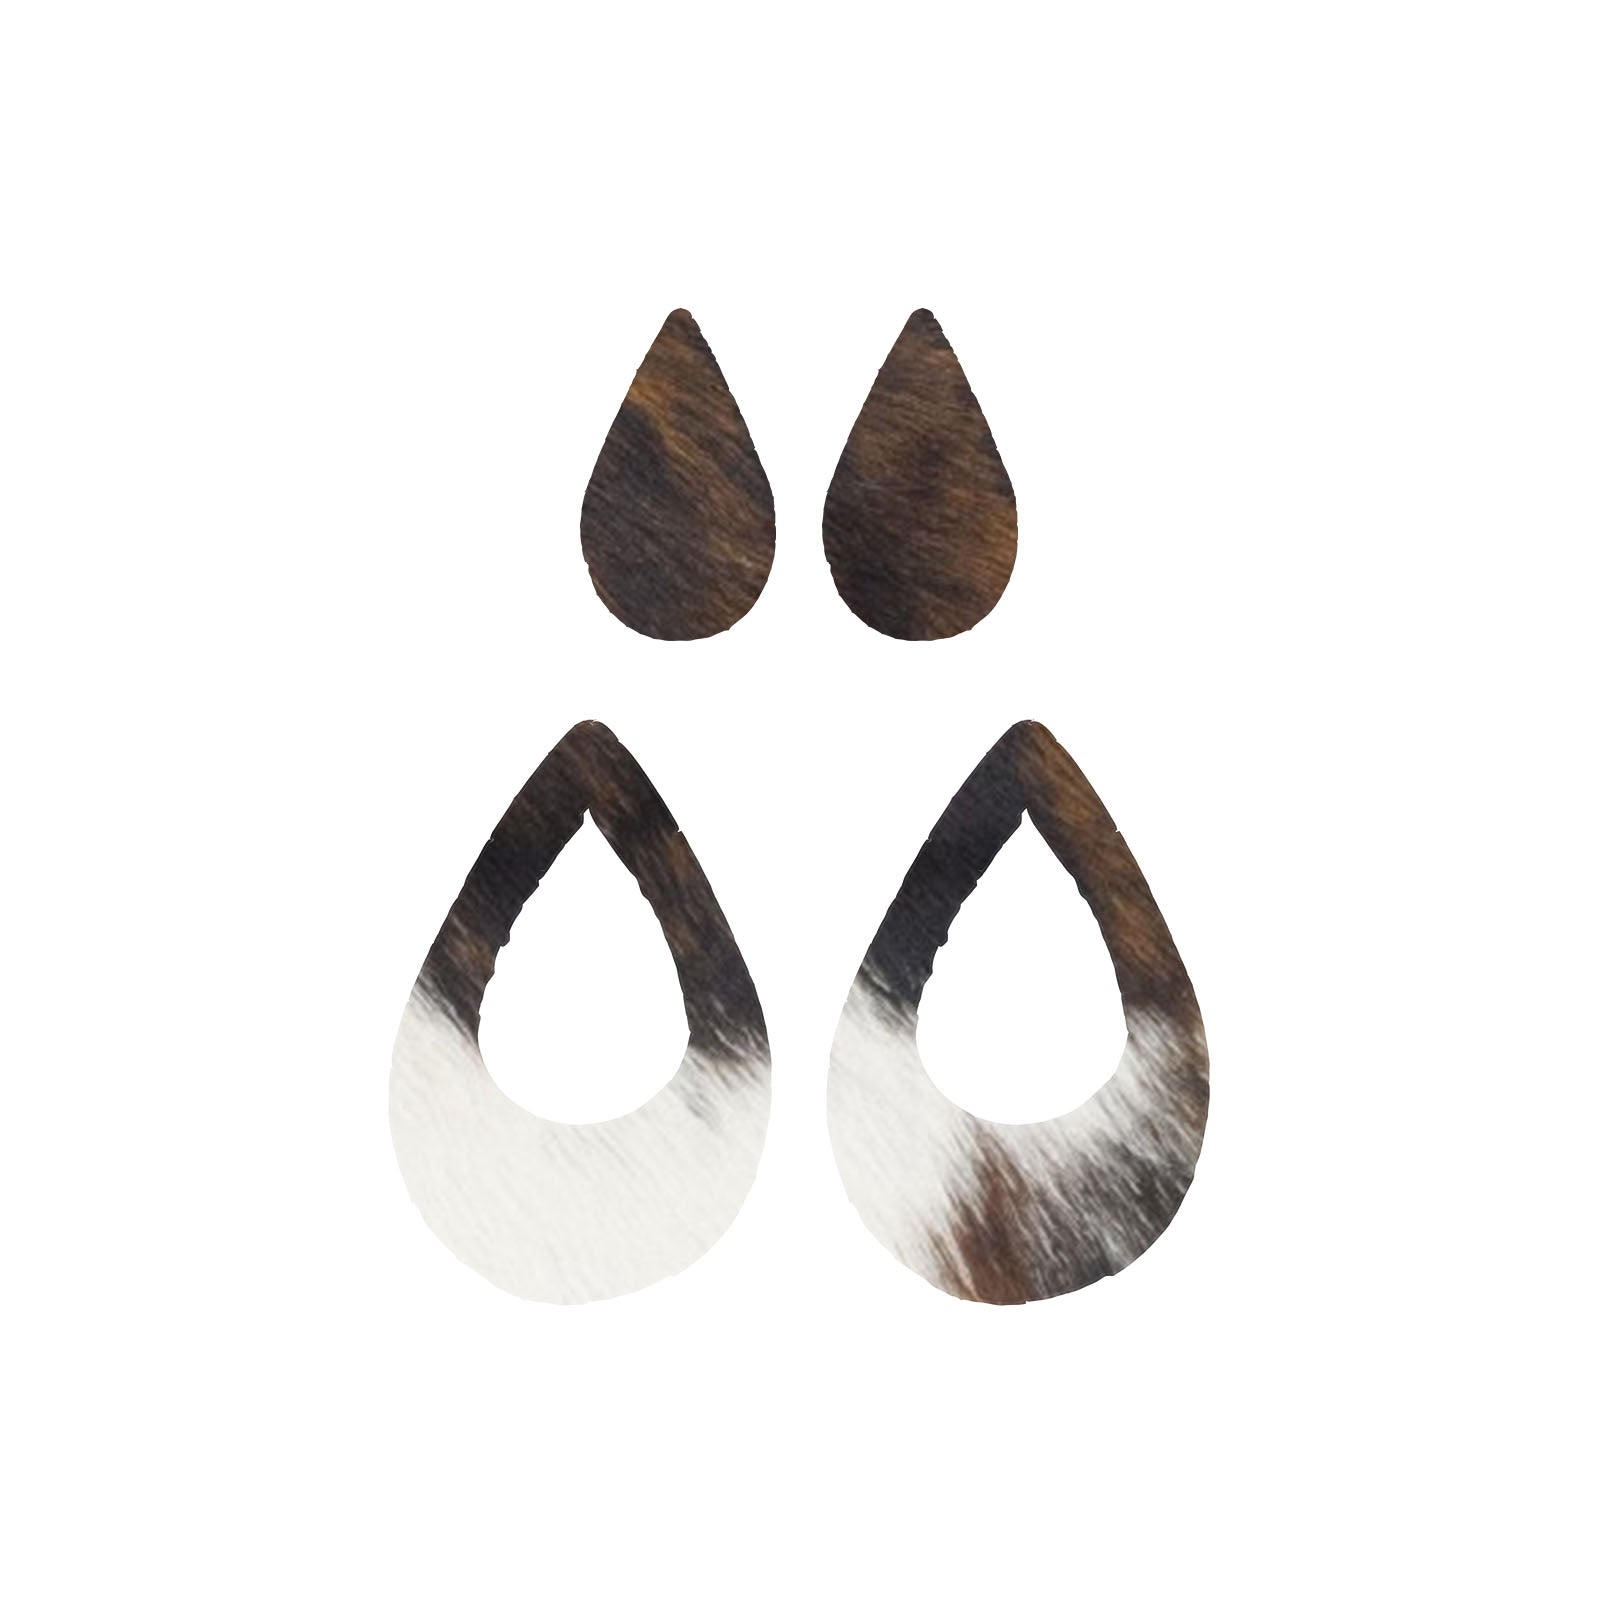 Tri-Colored Black/Brown/Off White Hair On Die Cut Earrings, Medium Teardrop Window | The Leather Guy